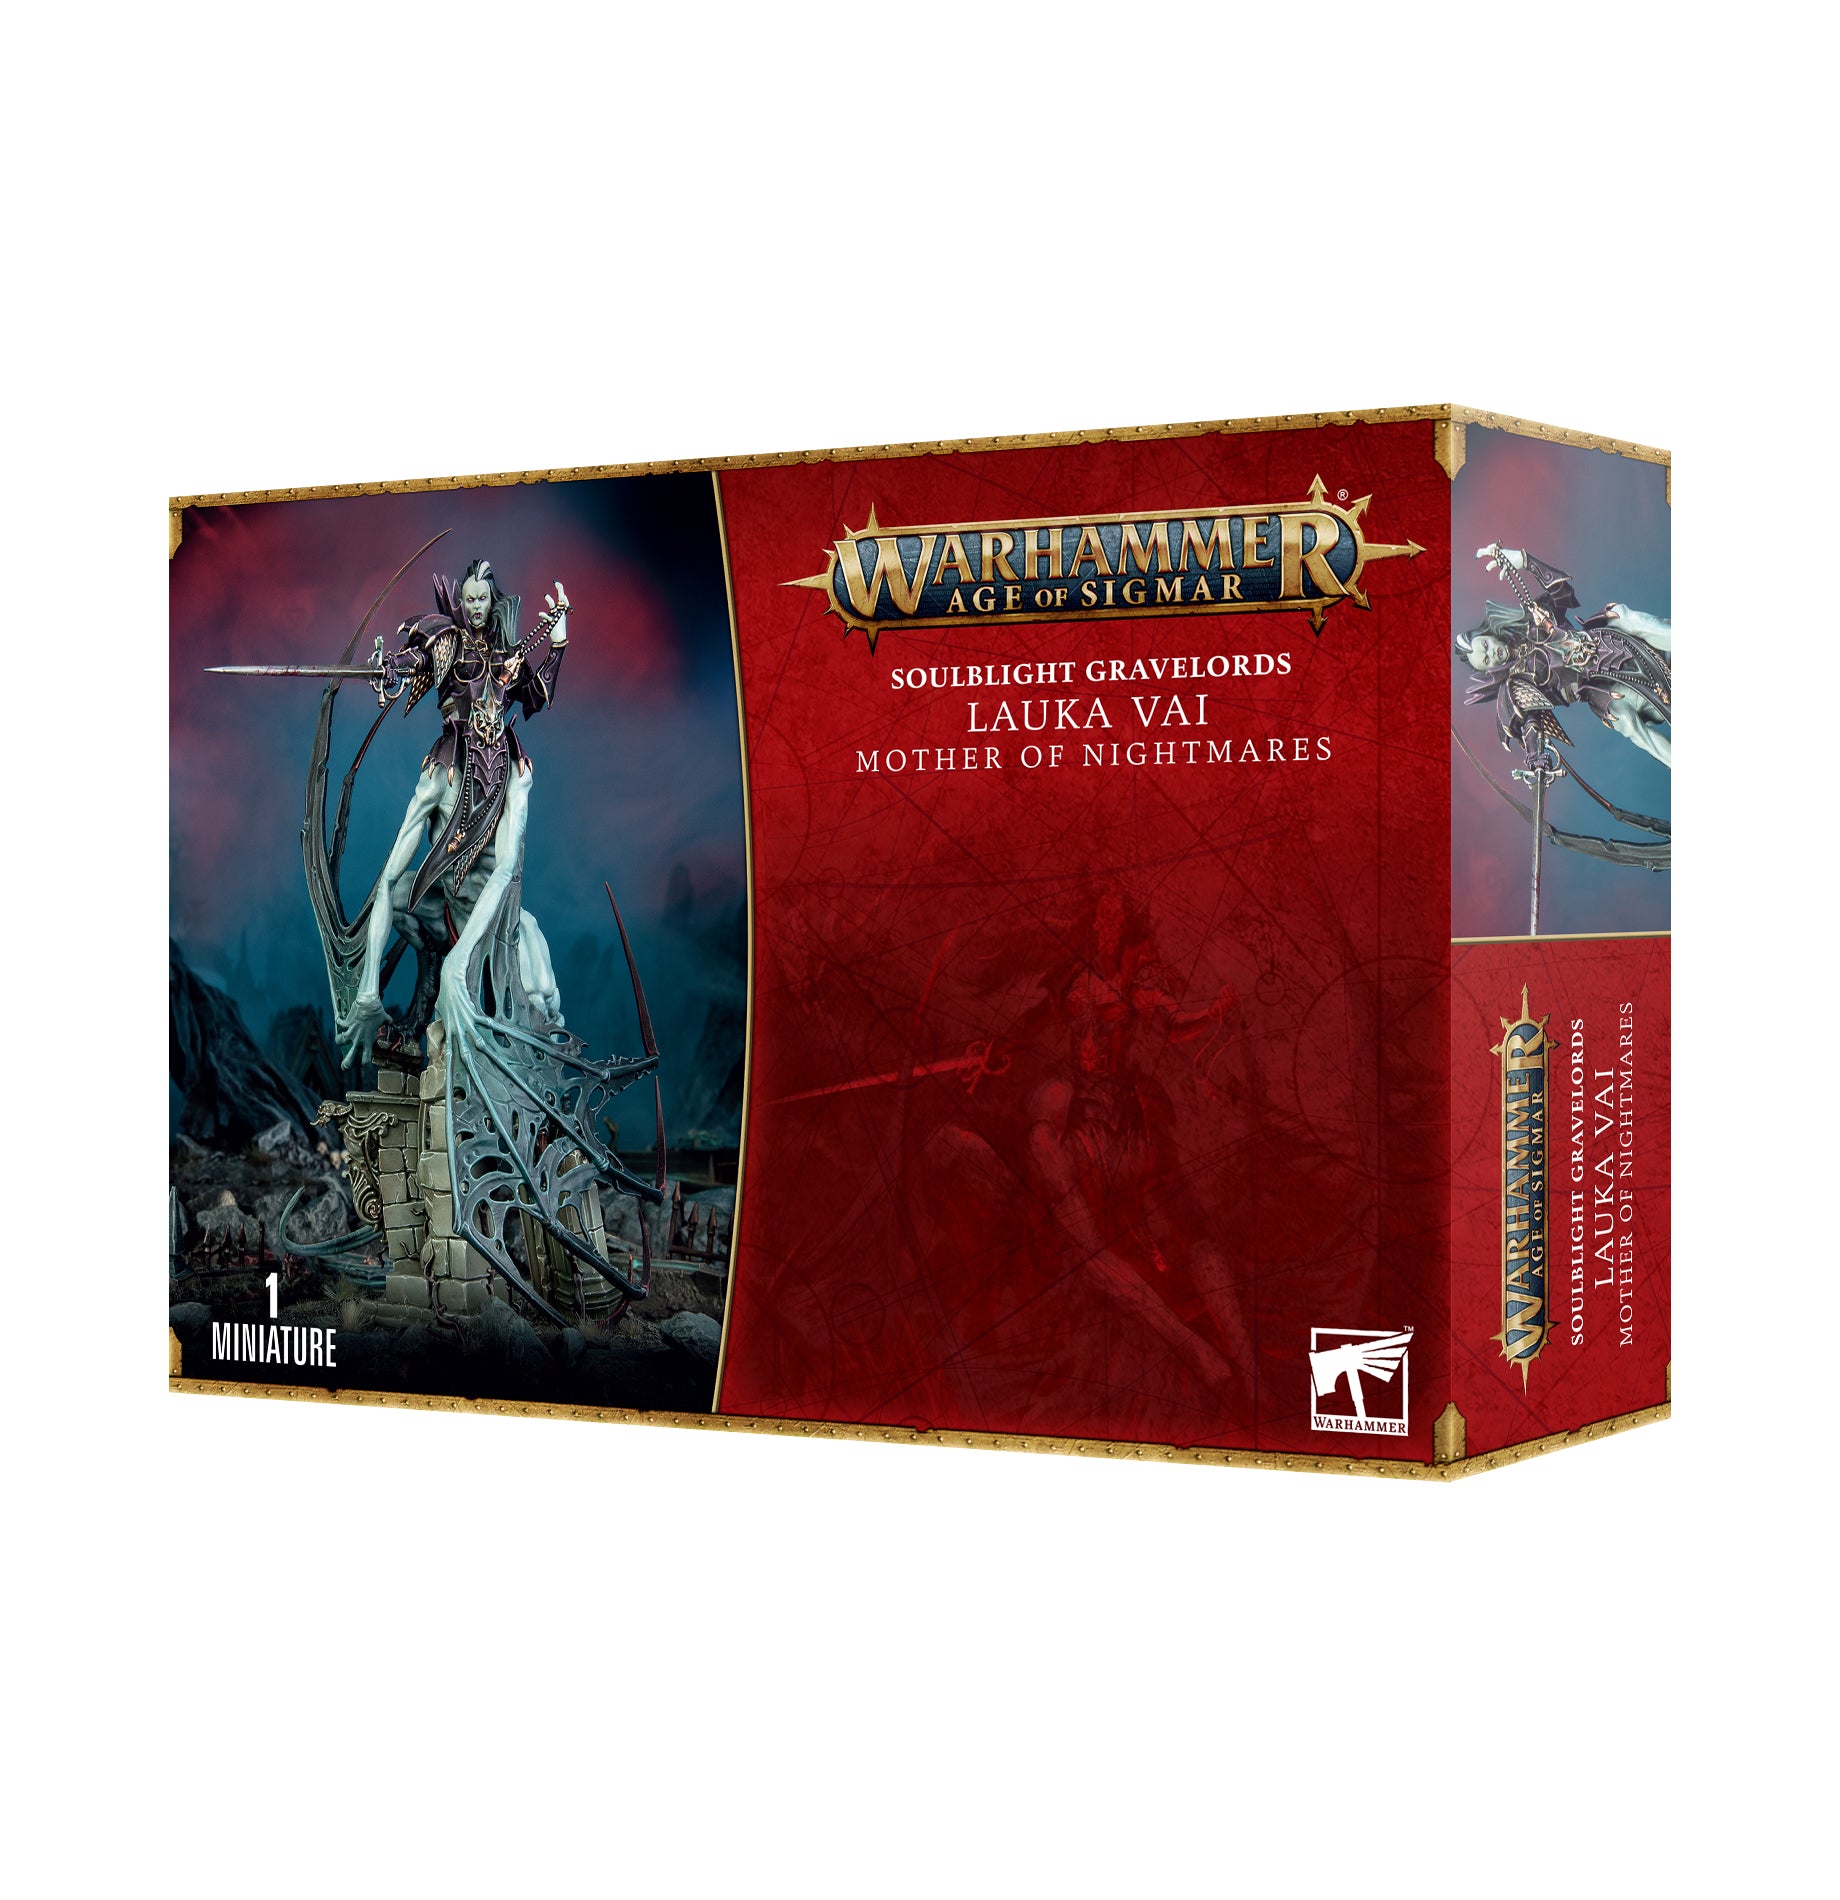 a box of warhammer warhammer warhammer warhammer warhammer warhammer war